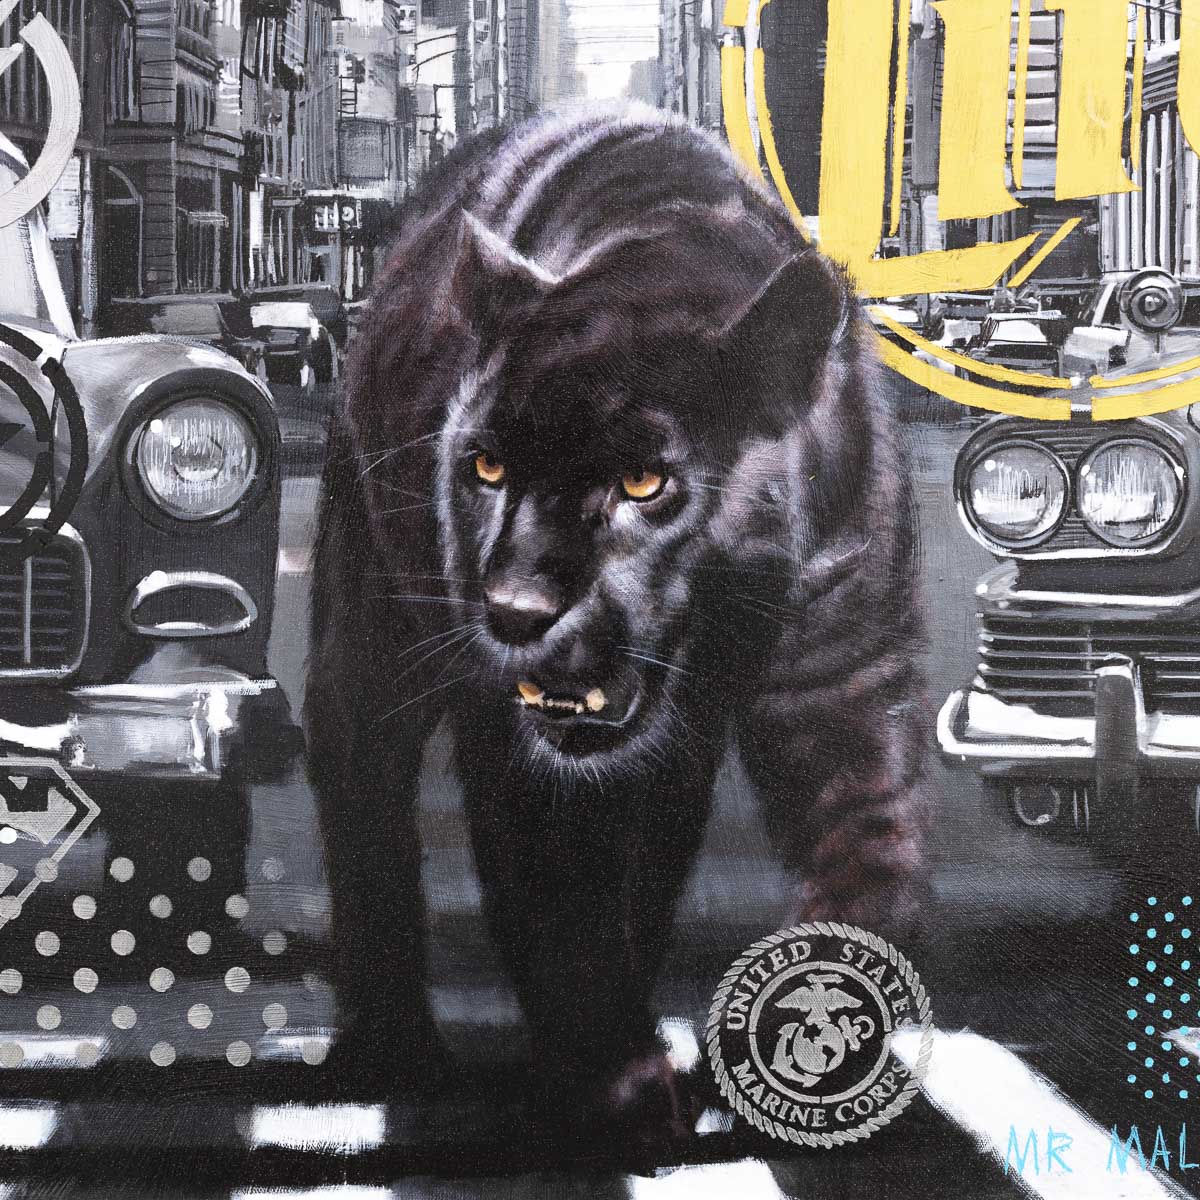 Black Panther - Original Mr Malcontent Framed